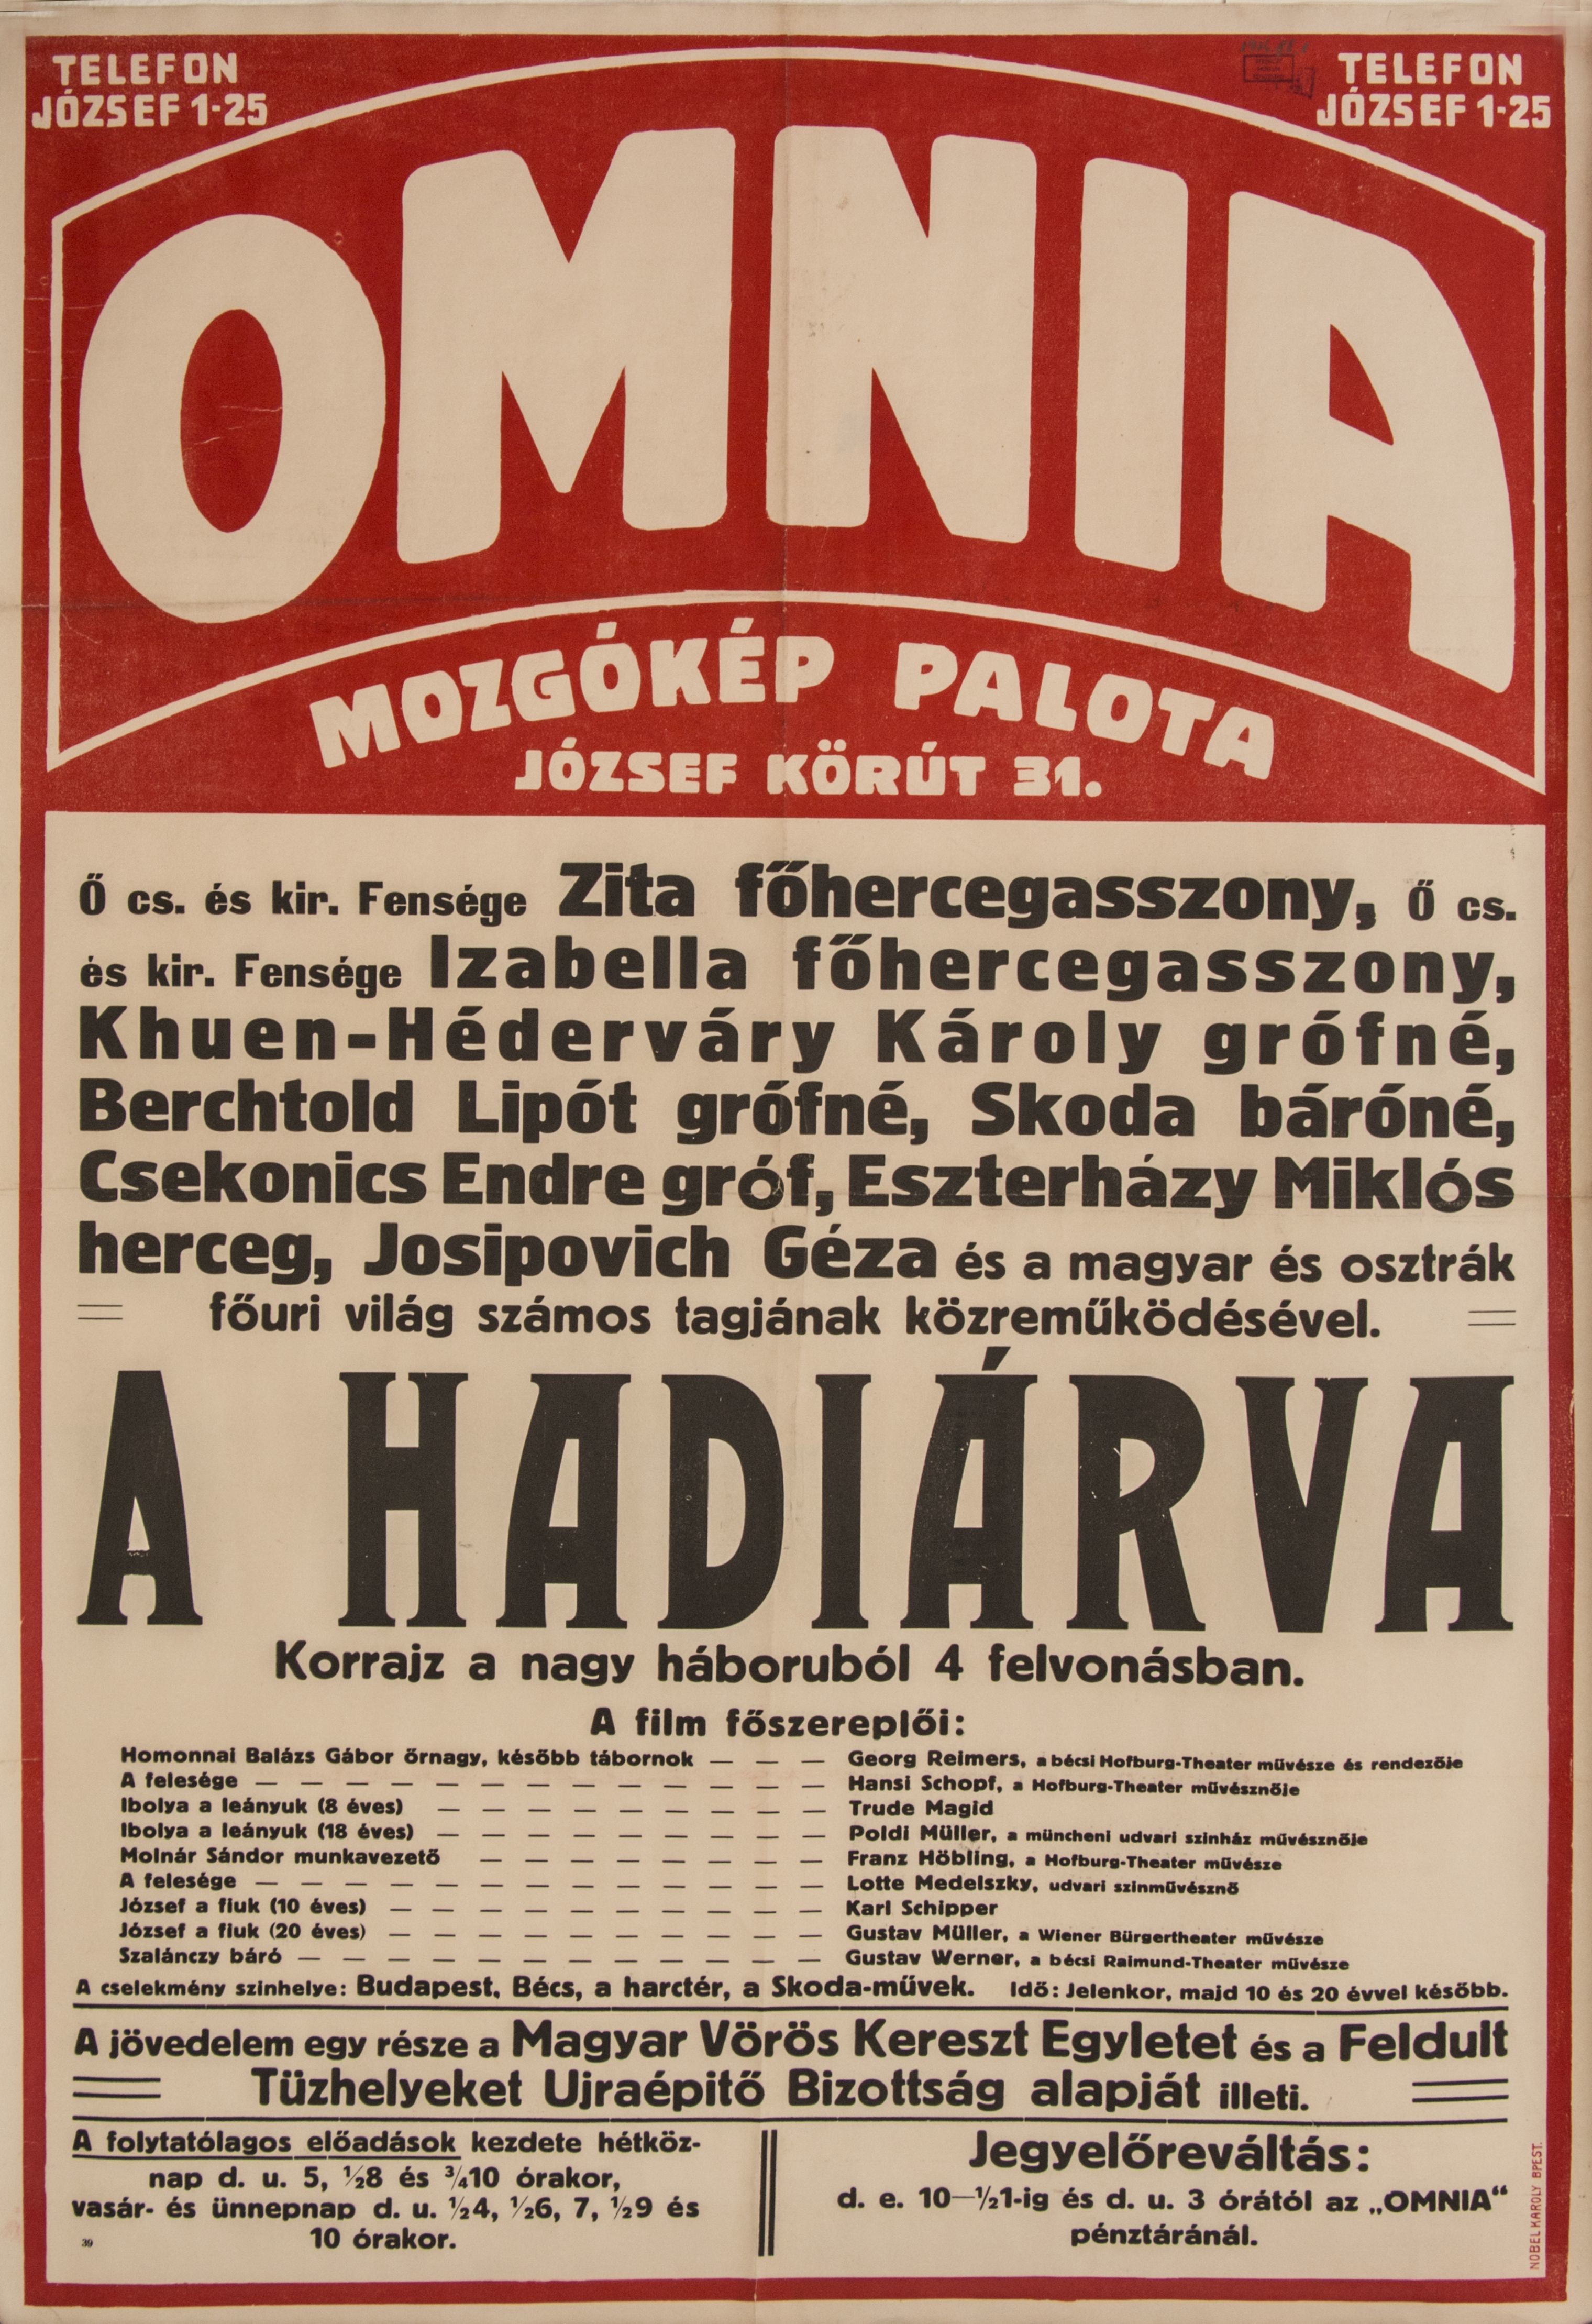 OMNIA mozgókép palota hirdetése a Hadiárva című filmről (fehér alap, fekete, piros) (Ferenczy Múzeumi Centrum CC BY-NC-SA)